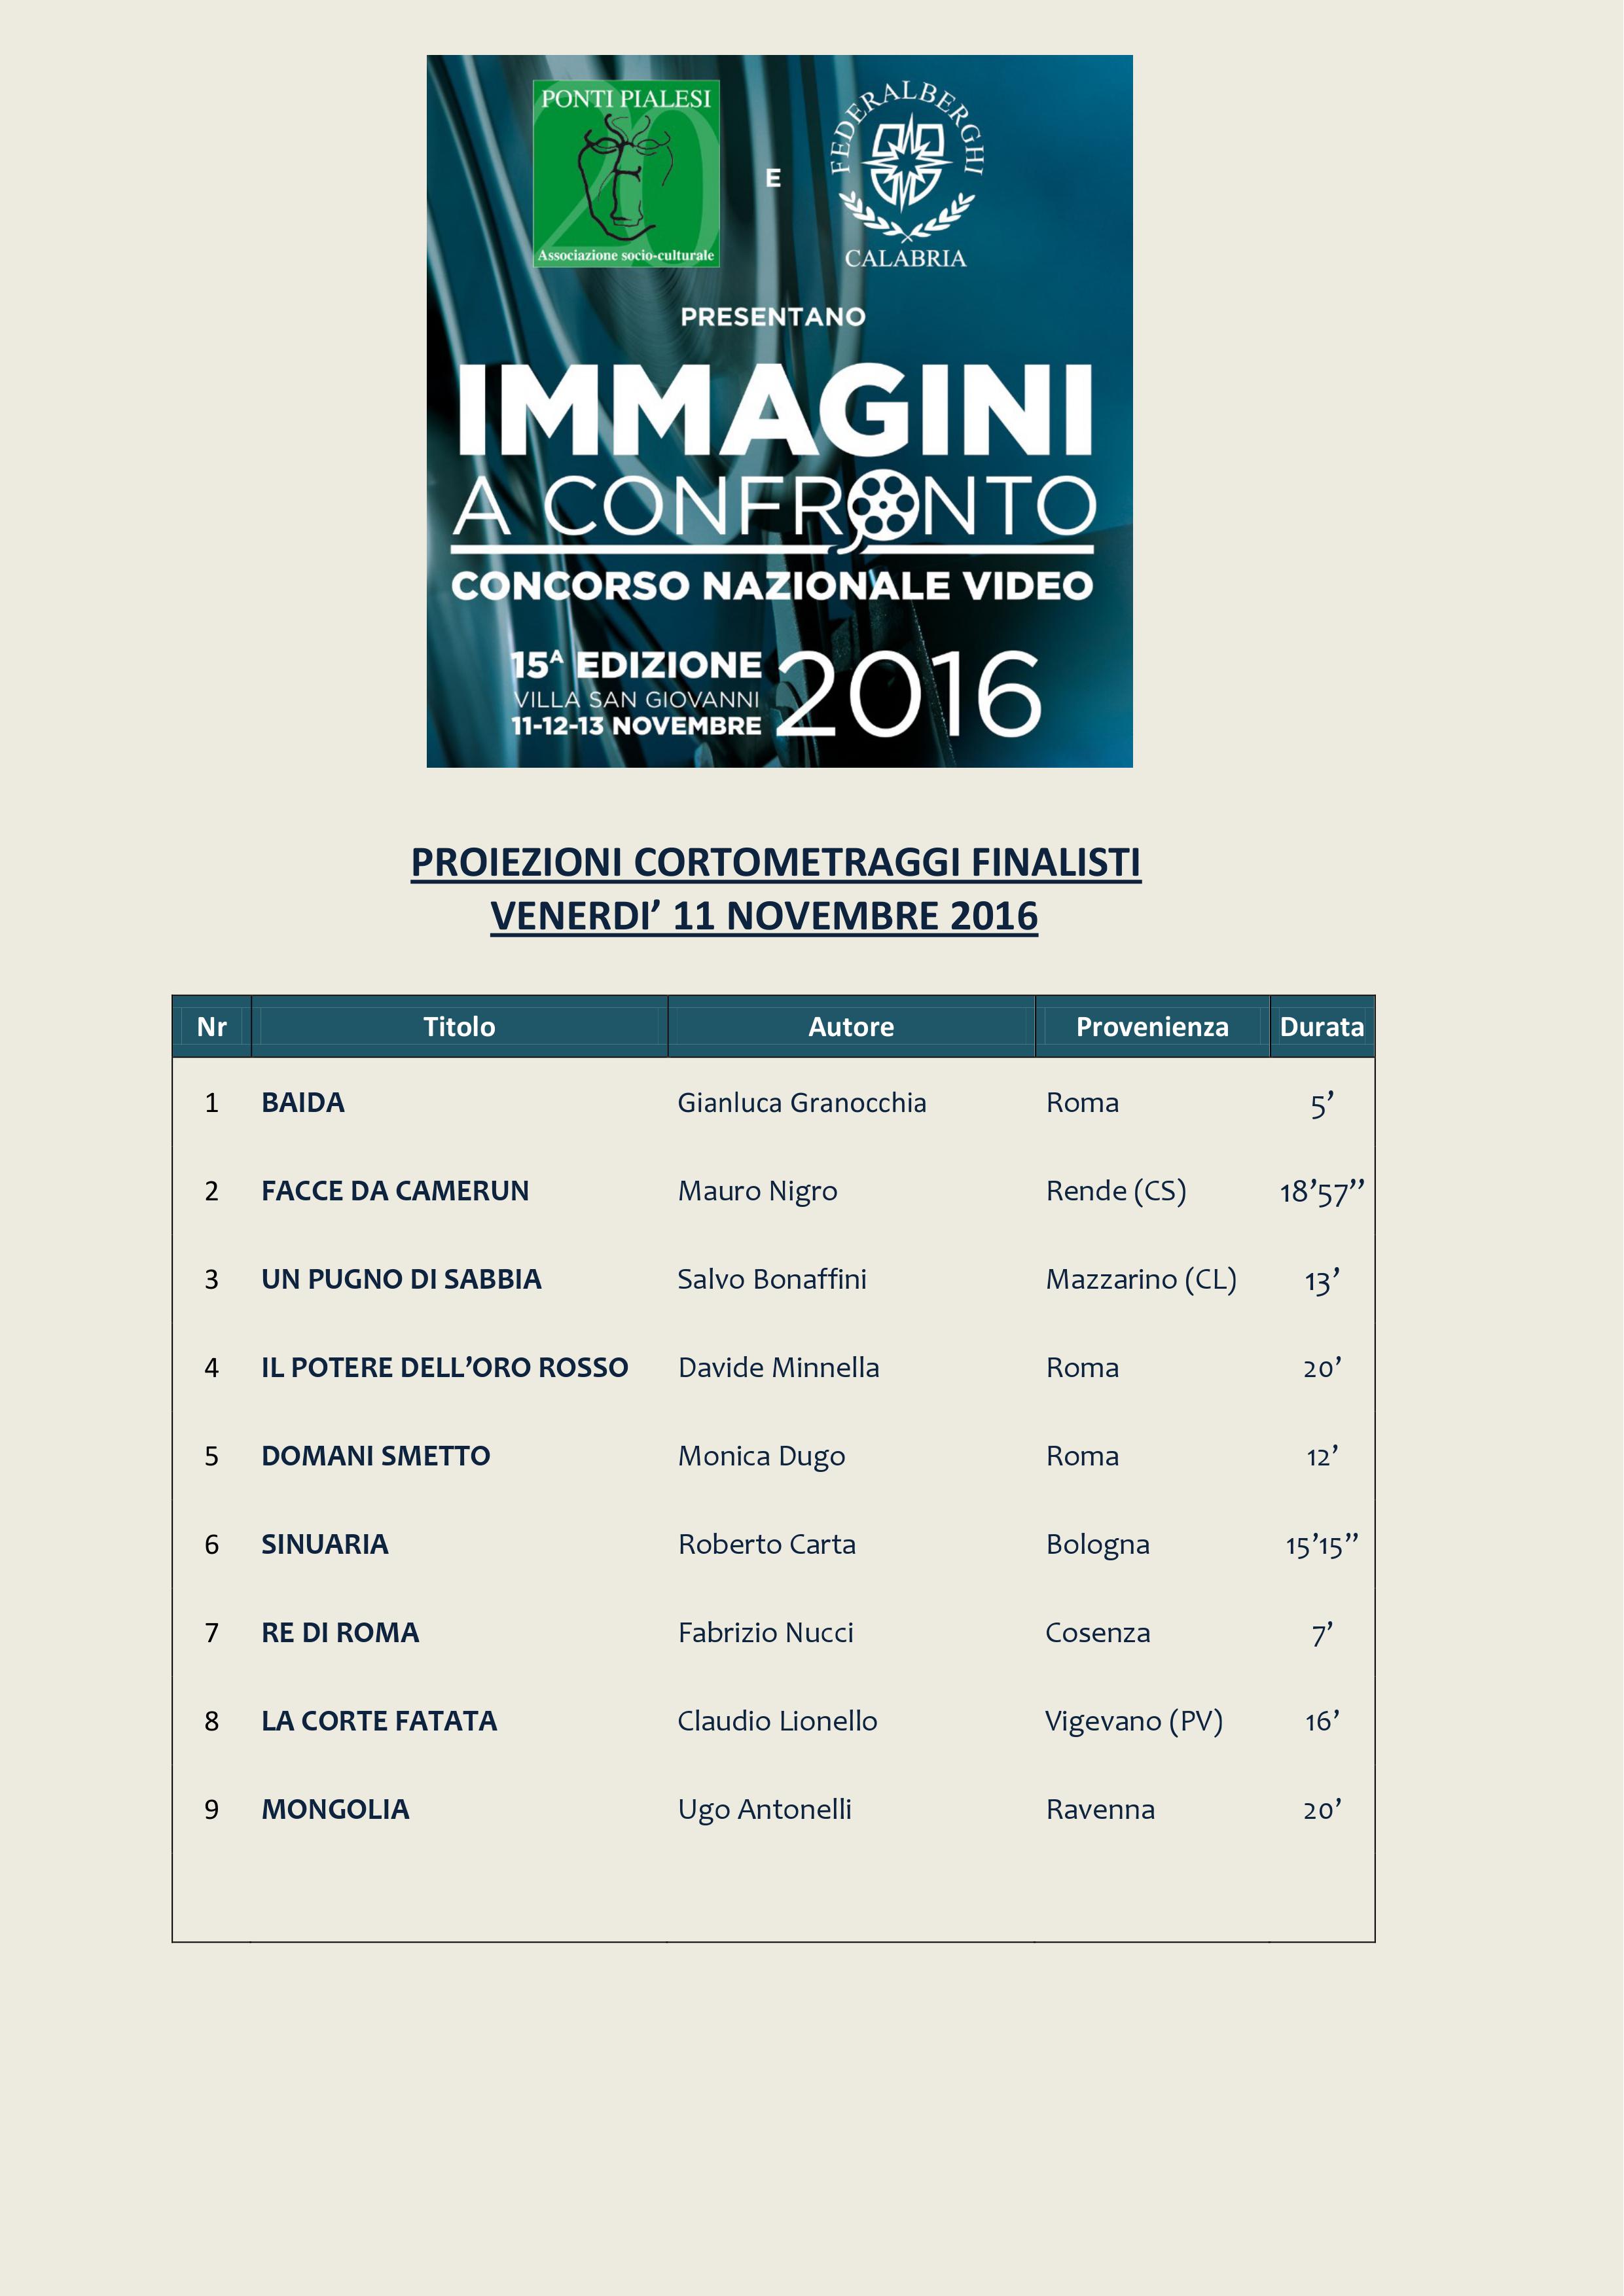 PONTI PIALESI - Proiezioni Corti finalisti Venerdi' 11 Novembre 2016